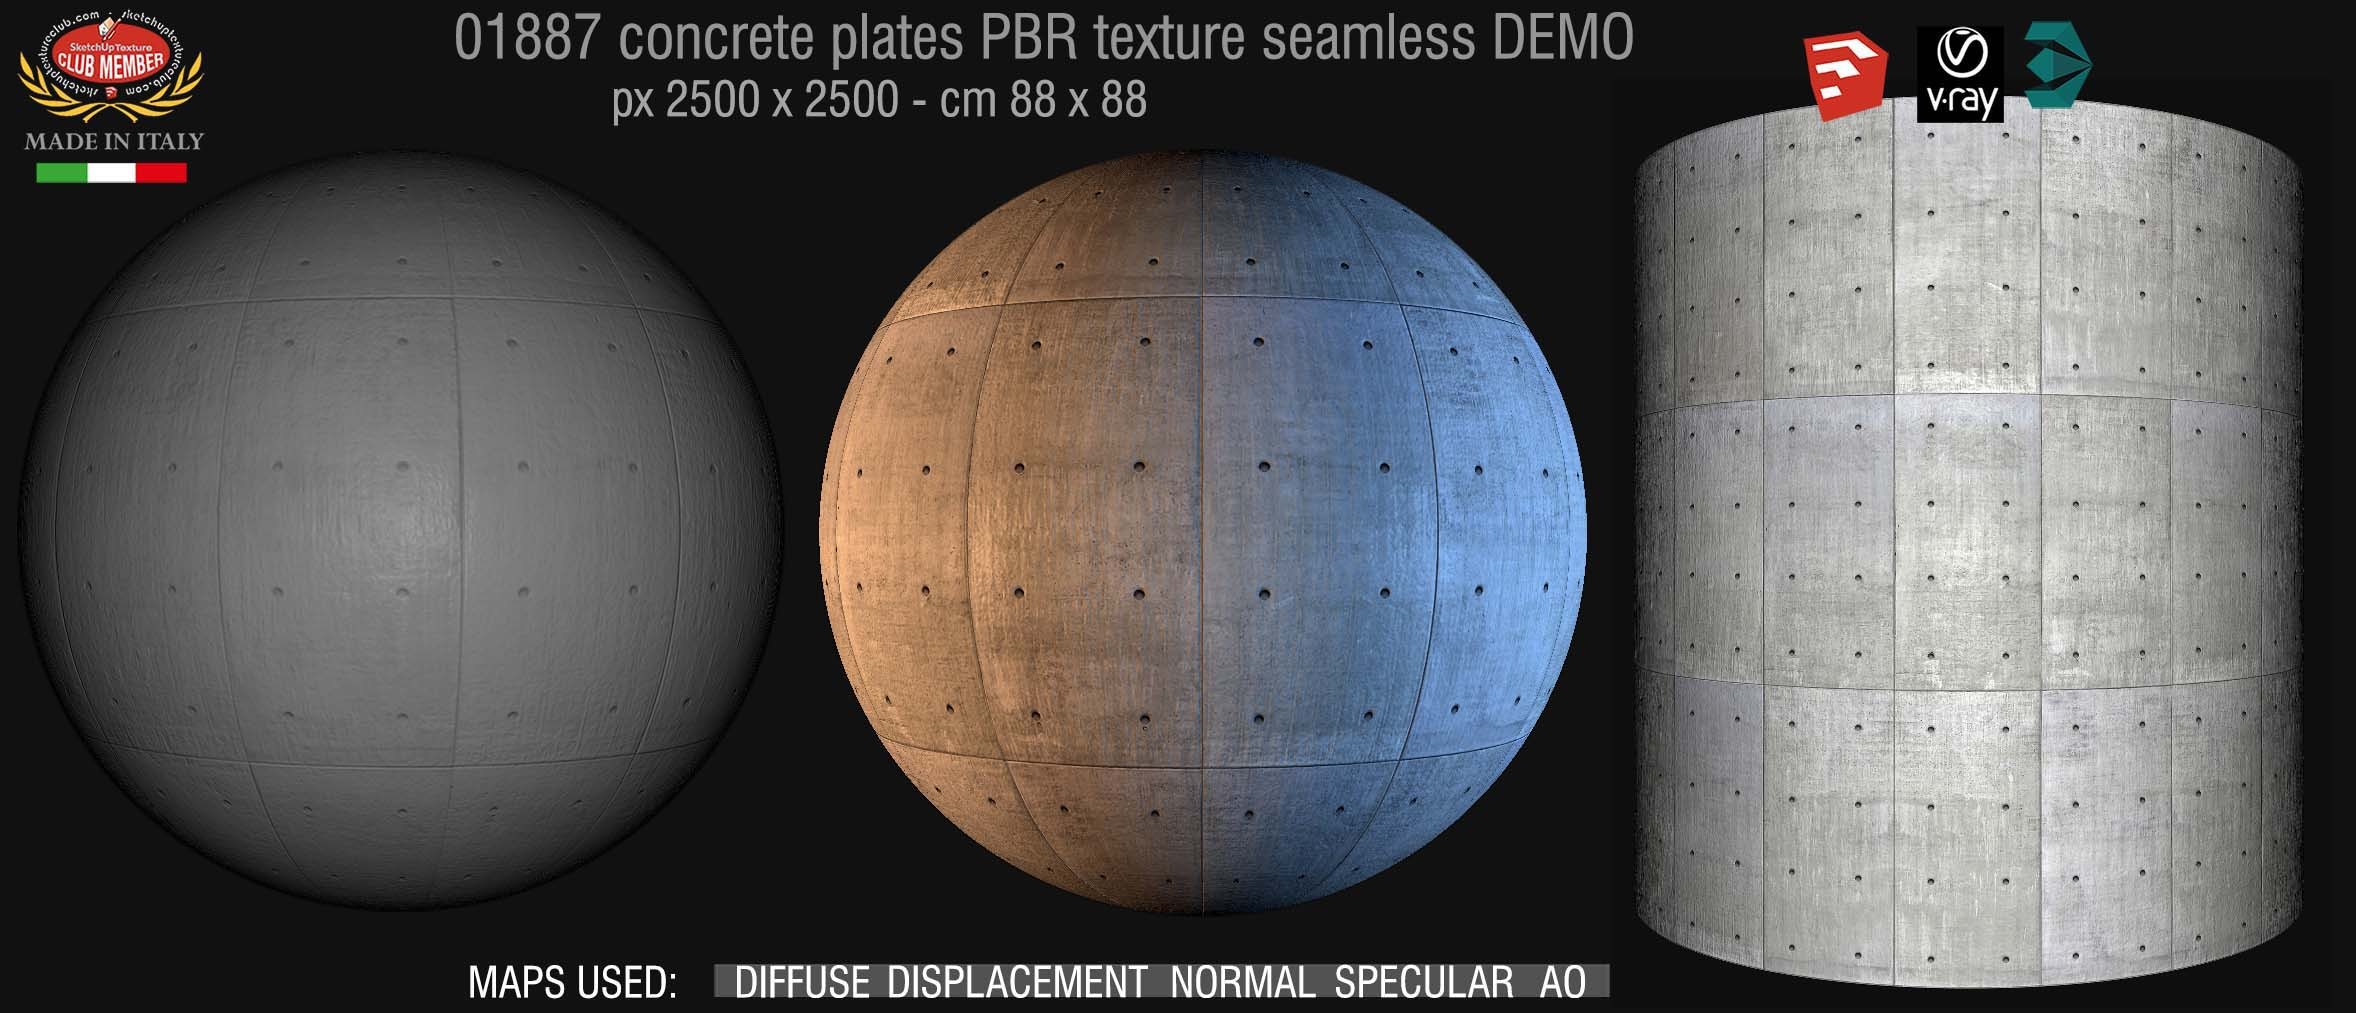 01887 tadao ando concrete plates PBR texture seamless DEMO